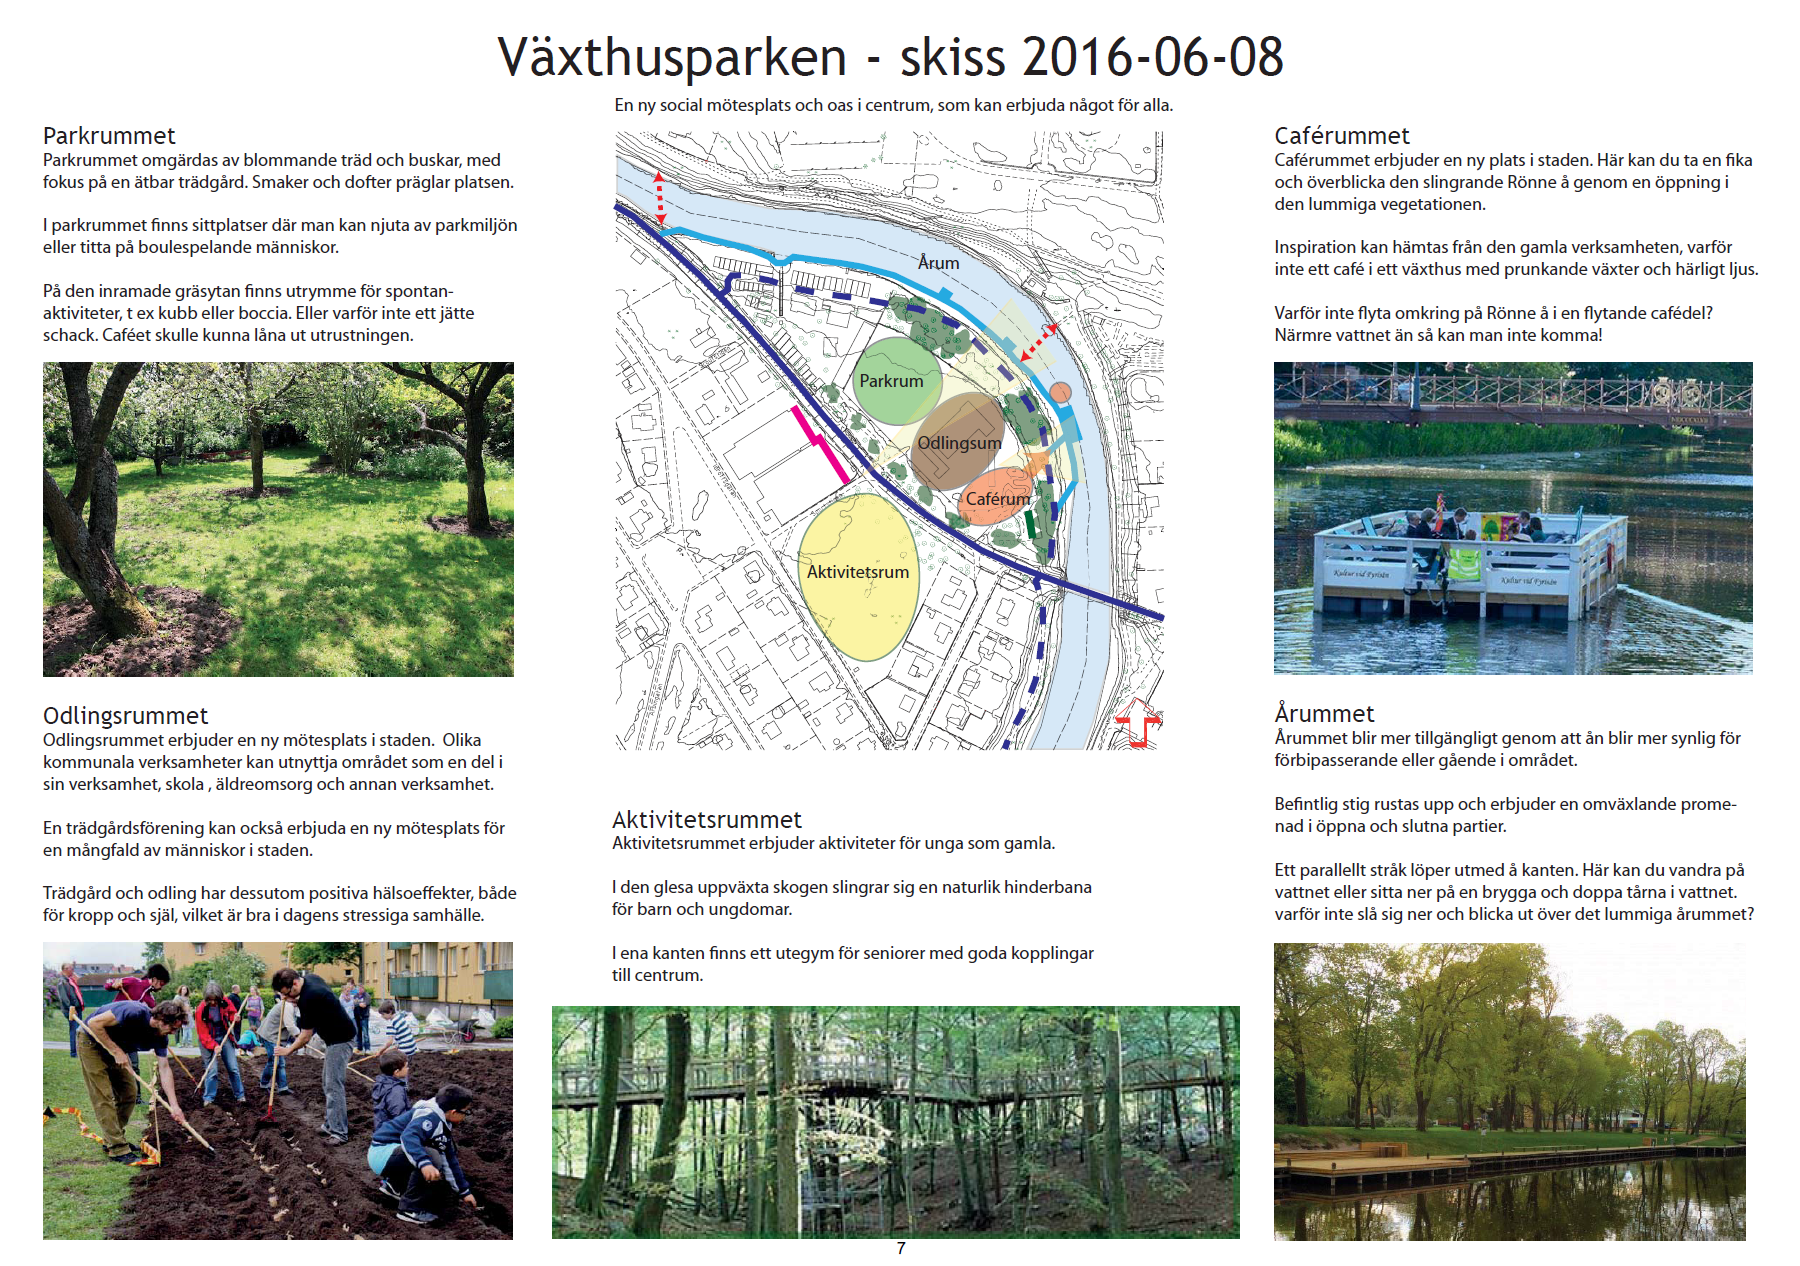 Växthusparken Skiss 2016-06-08 Blad 2